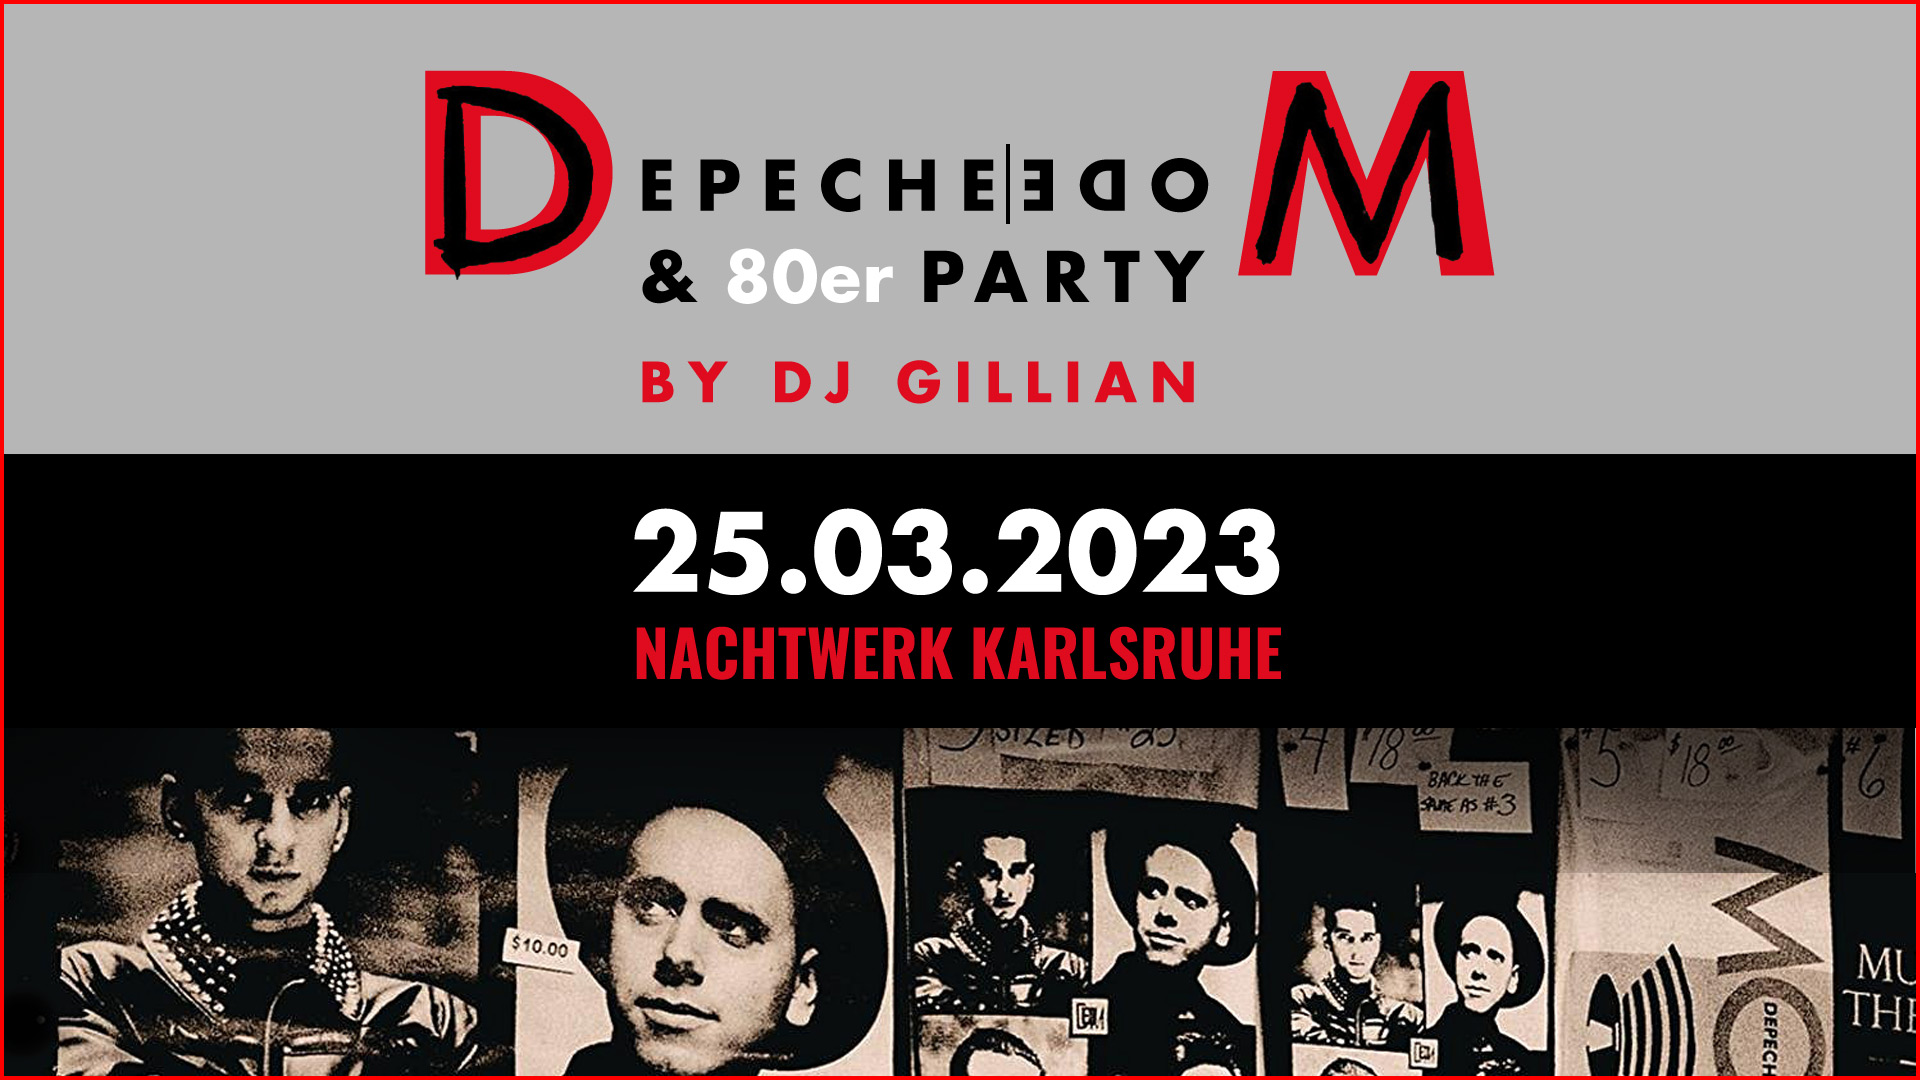 Die Depeche Mode & 80er Party im Nachtwerk Karlsruhe mit DJ GILLIAN. Die großartigen Songs von Depeche Mode, die kultigsten Hits aus den 80ern und die beliebtesten Pop & Wave Klassiker.